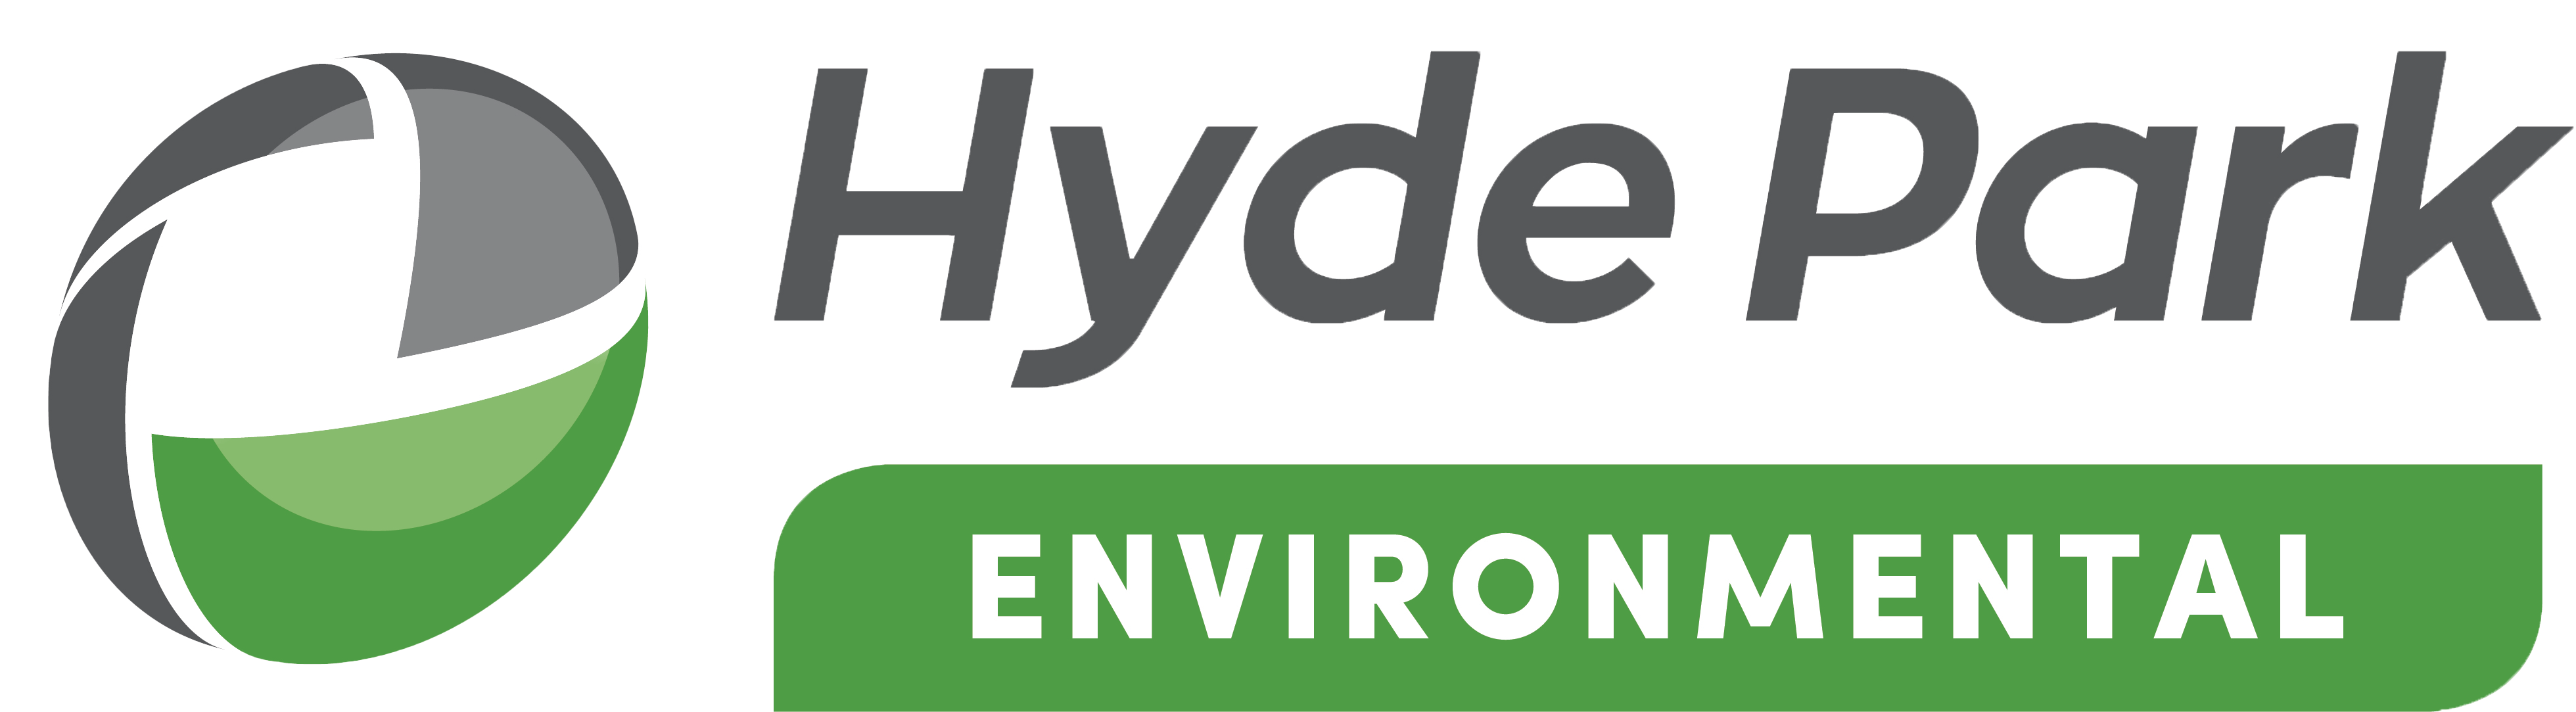 Hyde Park Environmental